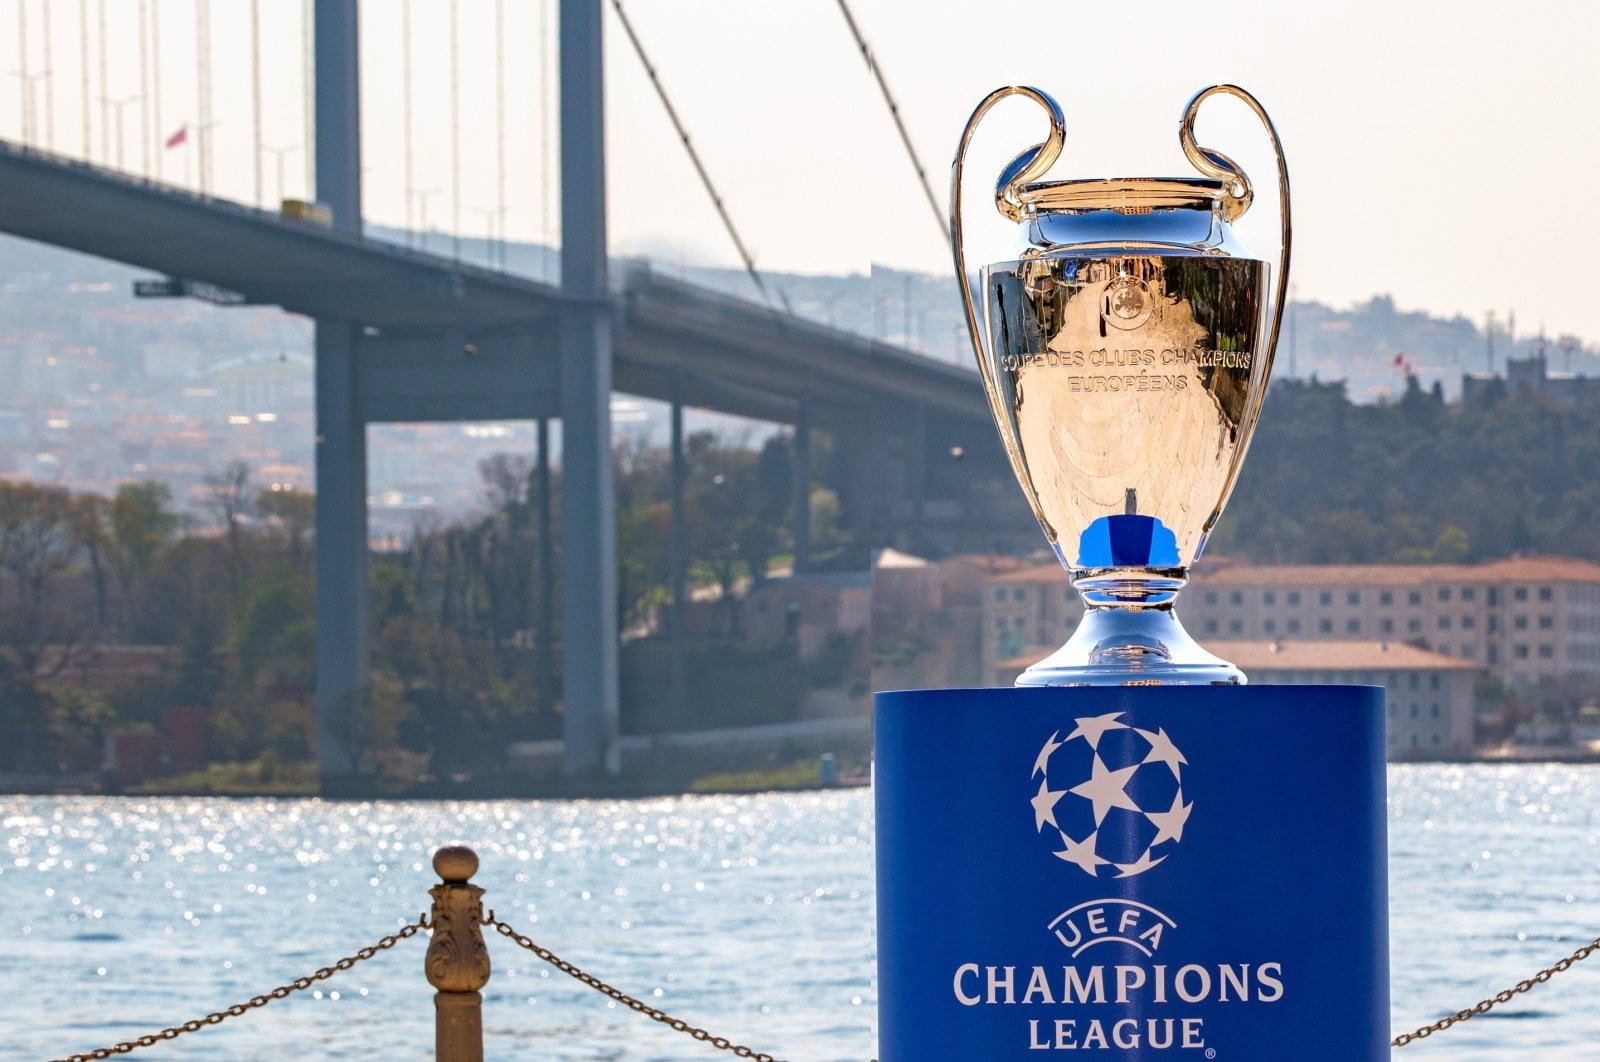 Τί ξέρει η UEFA και παίρνει τα μέτρα της; Σχέδιο έκτακτης ανάγκης για…μεταφορά του τελικού του Champions League από την Κωνσταντινούπολη εξαιτίας των εκλογών στην Τουρκία!